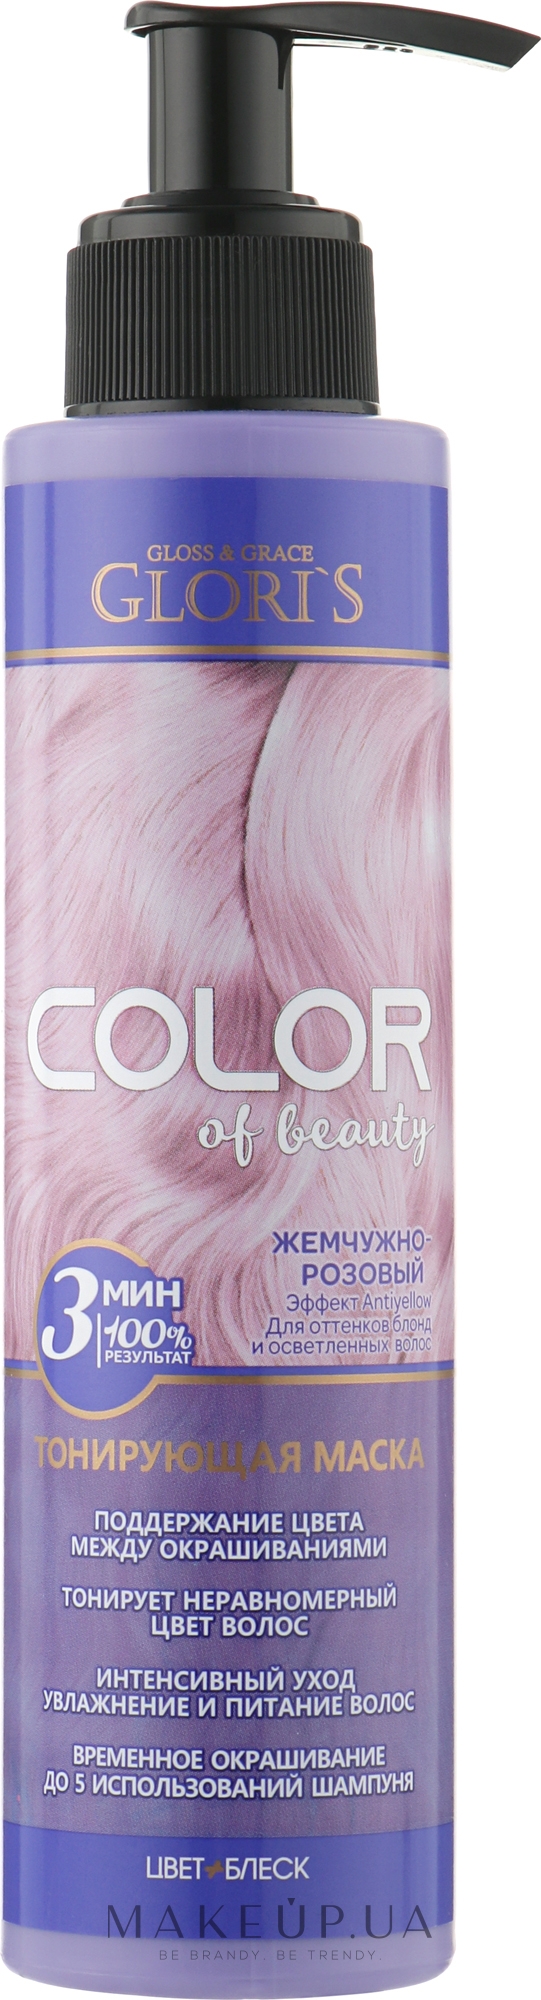 Тонирующая маска для волос - Glori's Color Of Beauty Hair Mask — фото Жемчужно-розовый